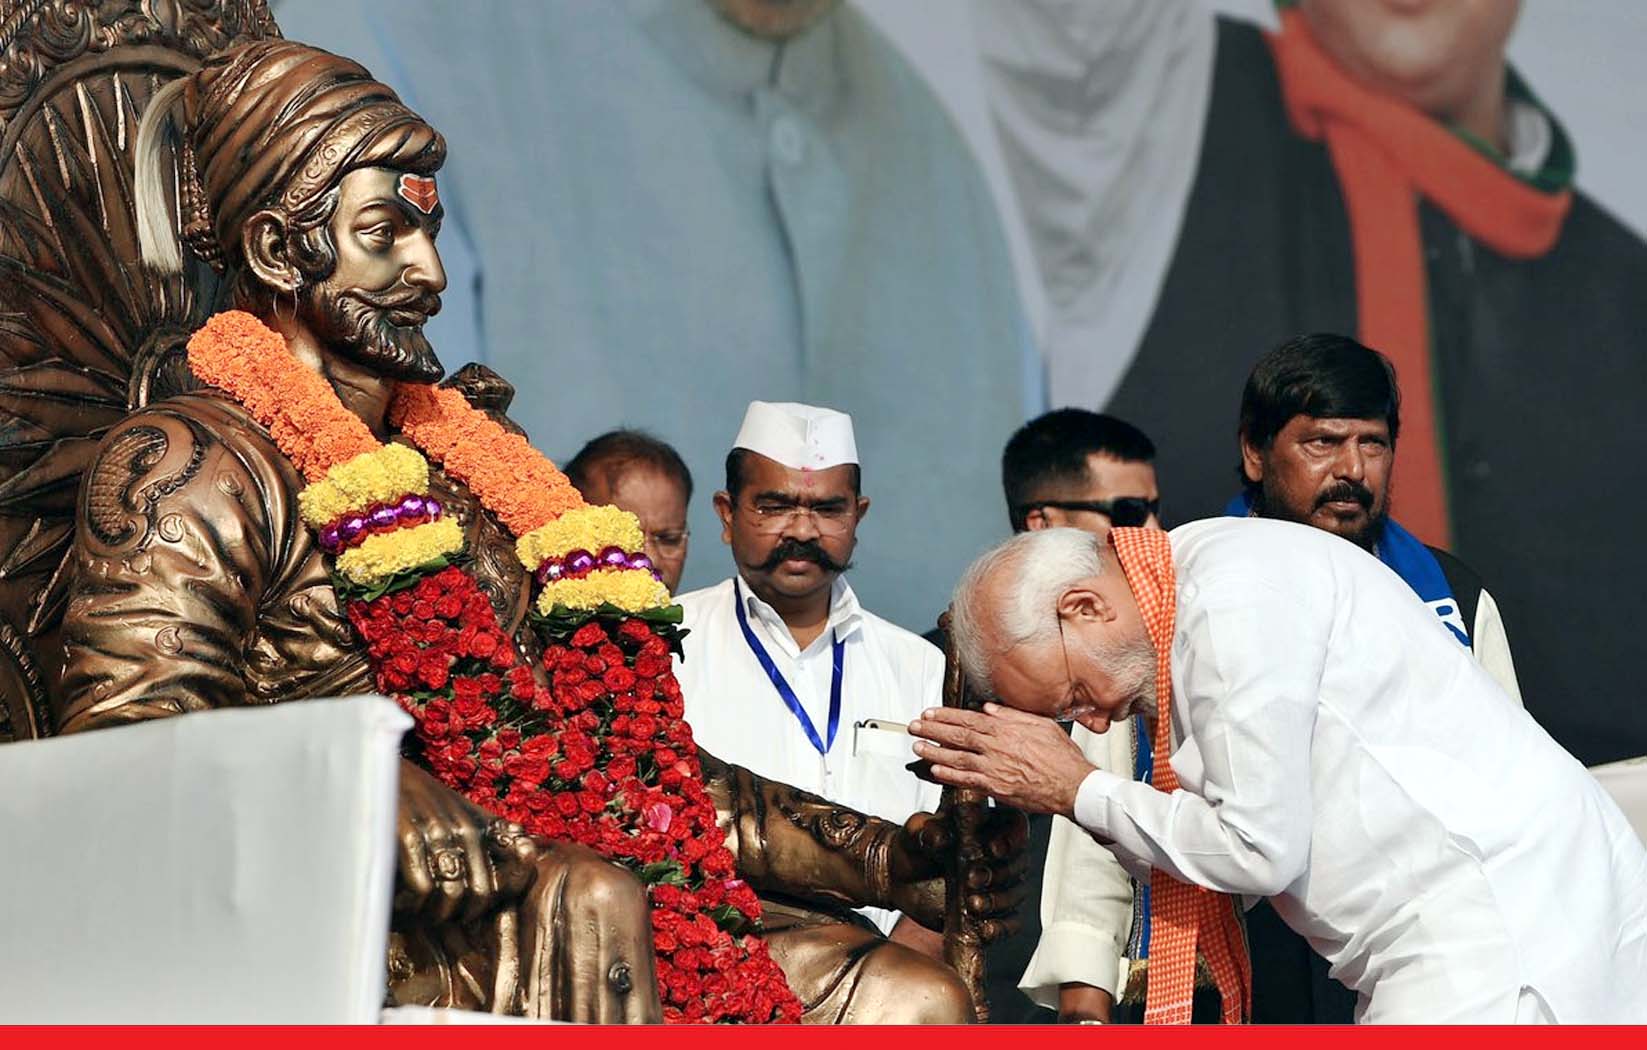 राजतिलक के 350 साल पूरे होने पर बोले प्रधानमंत्री मोदी: छत्रपति शिवाजी ने खत्म की गुलामी की मानसिकता